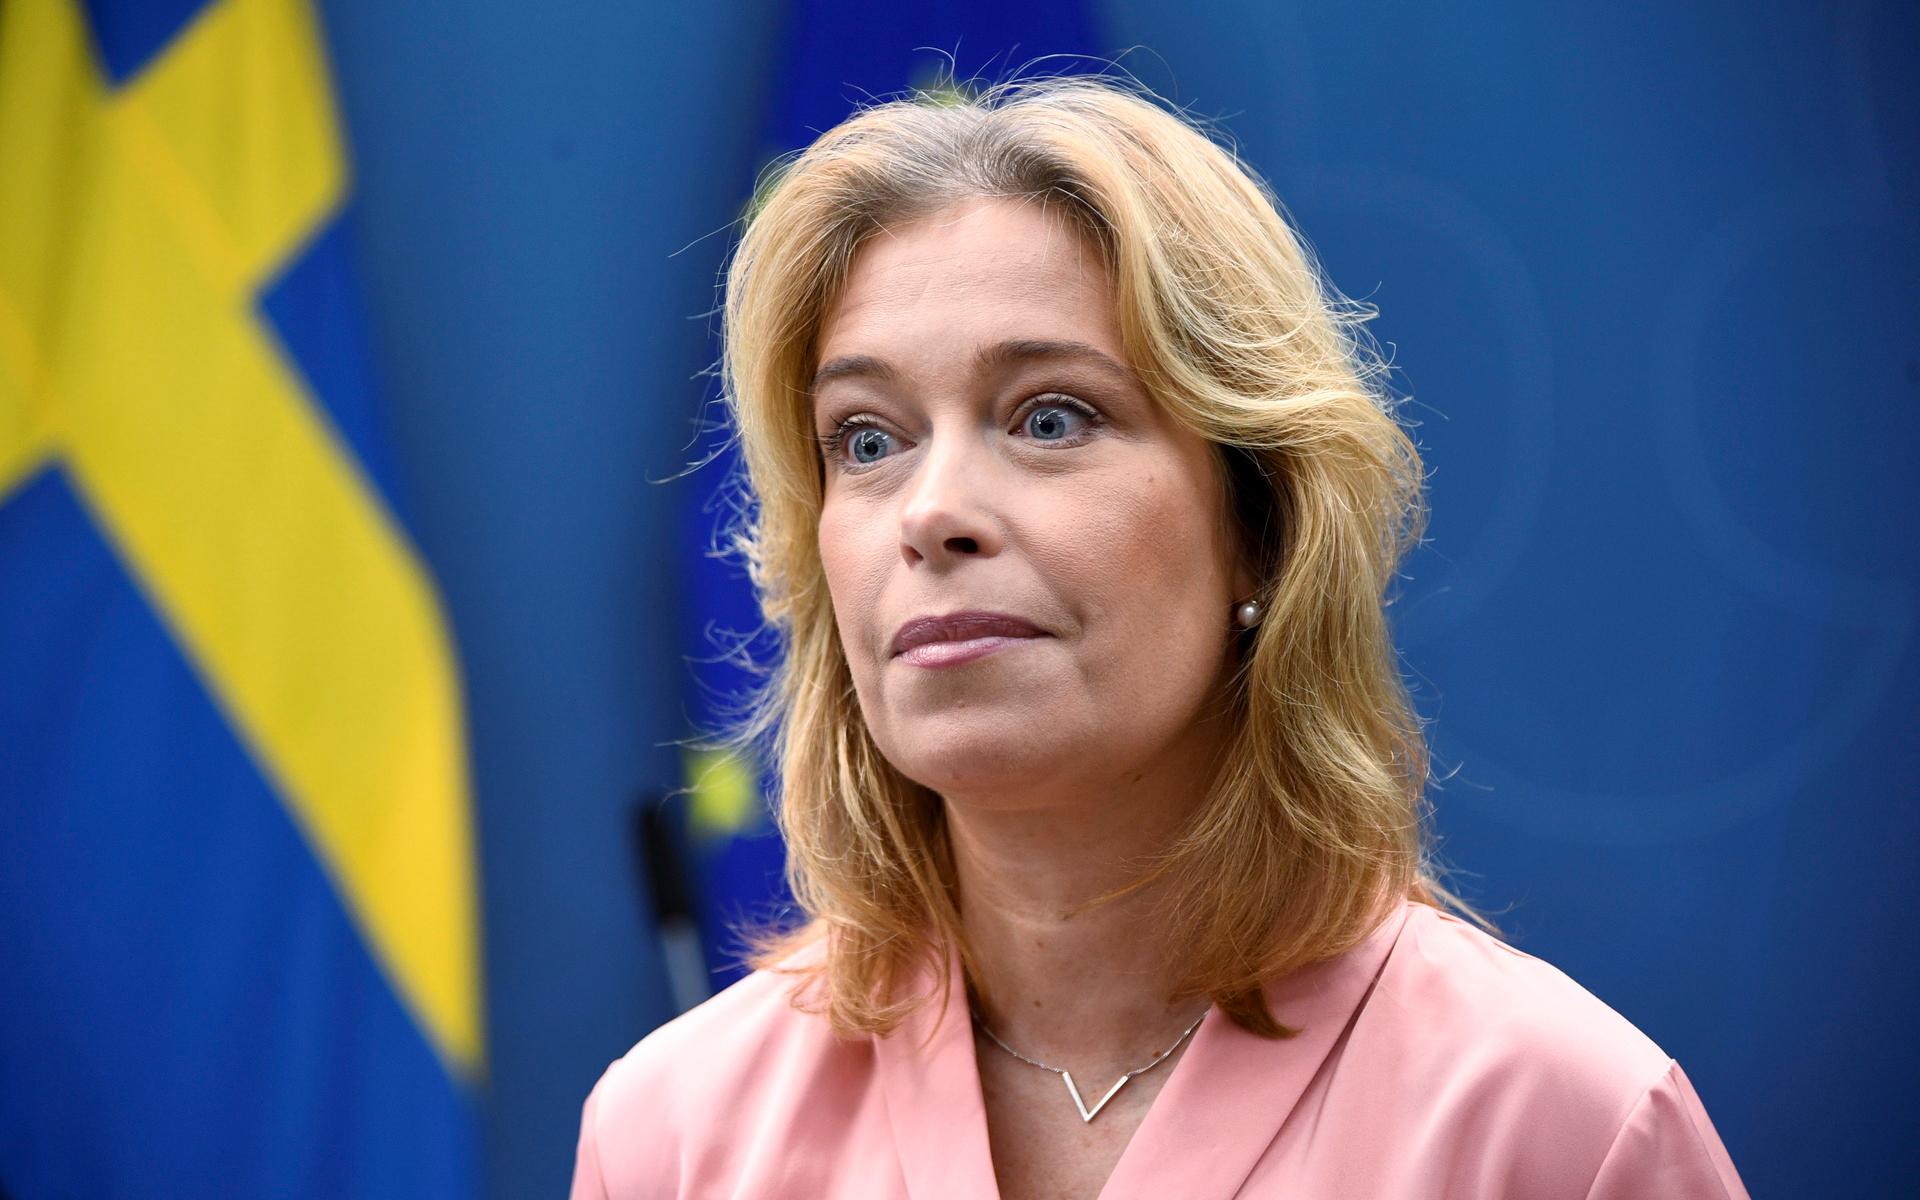 Klimat- och miljöministern Annika Strandhäll (S) håller pressträff om havsbaserad vindkraft.